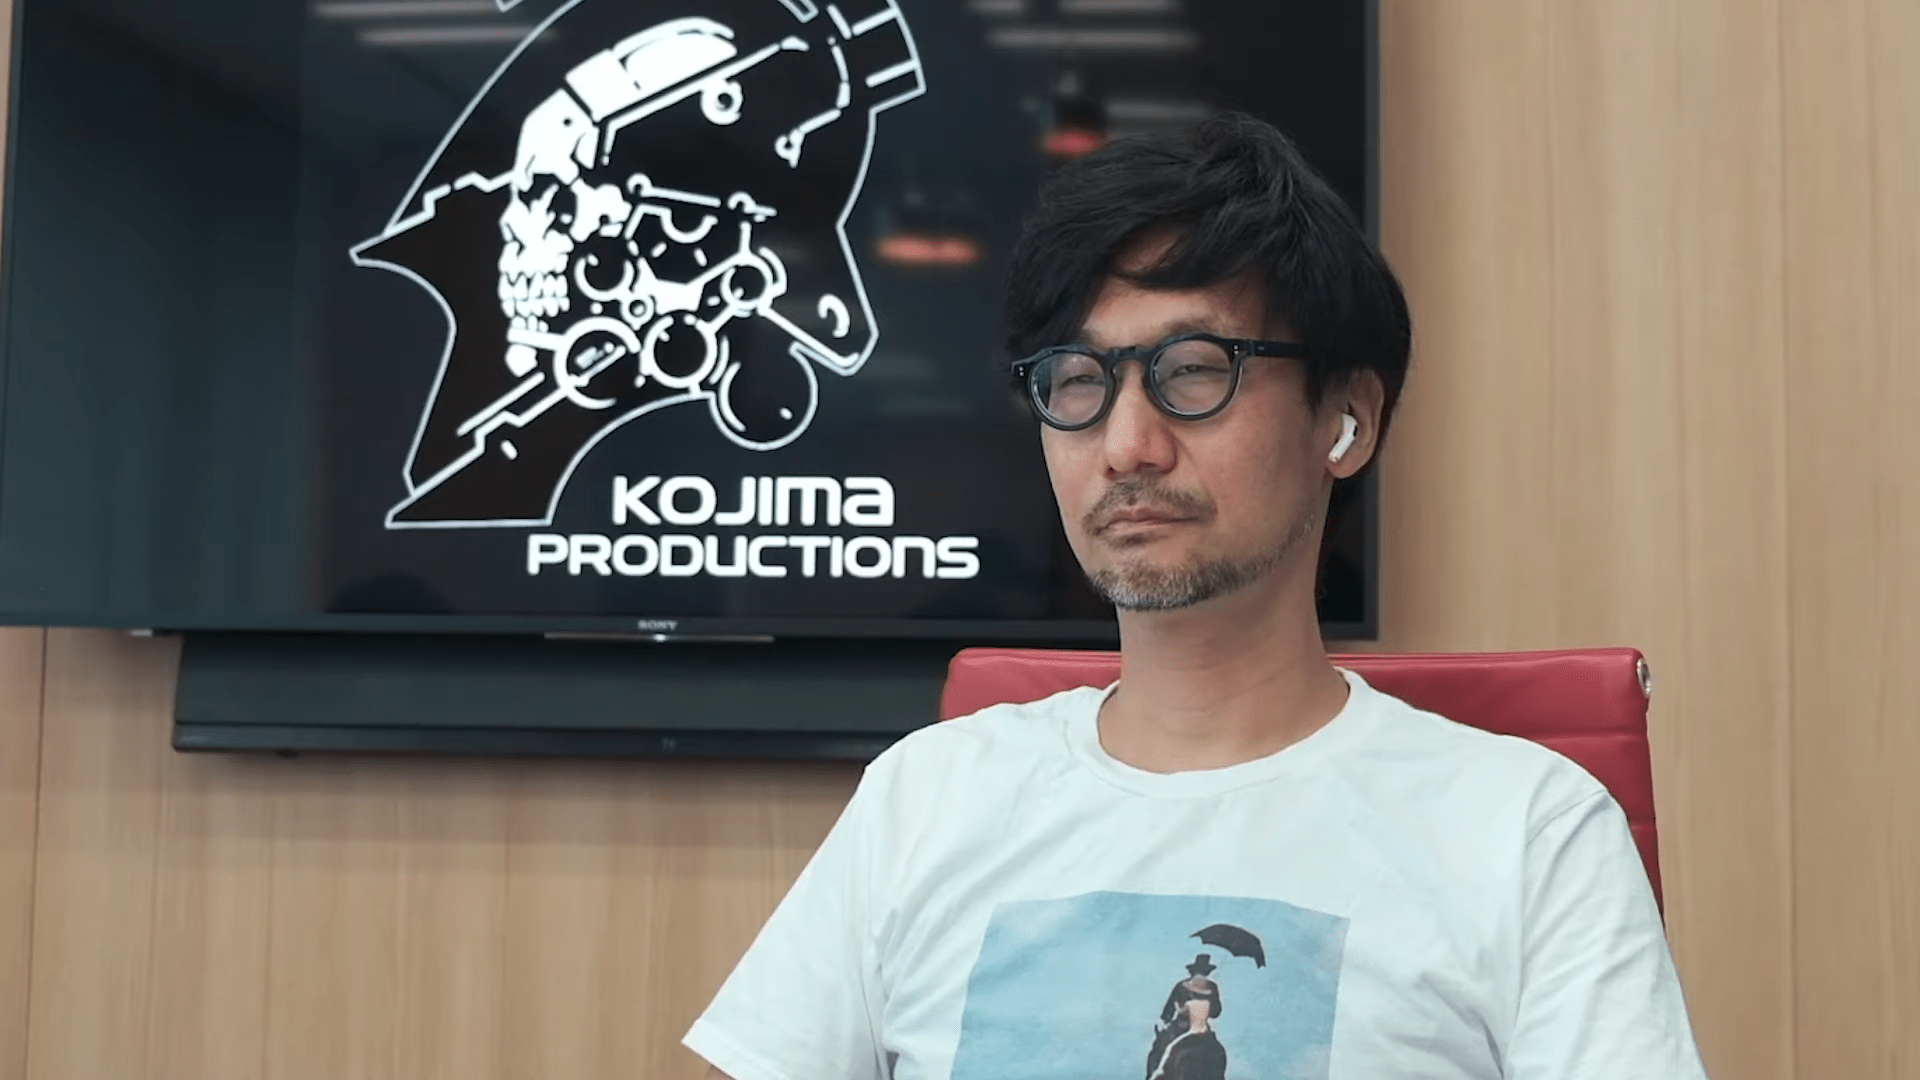 Хидео Кодзима работает сразу над несколькими «эпатажными» играми